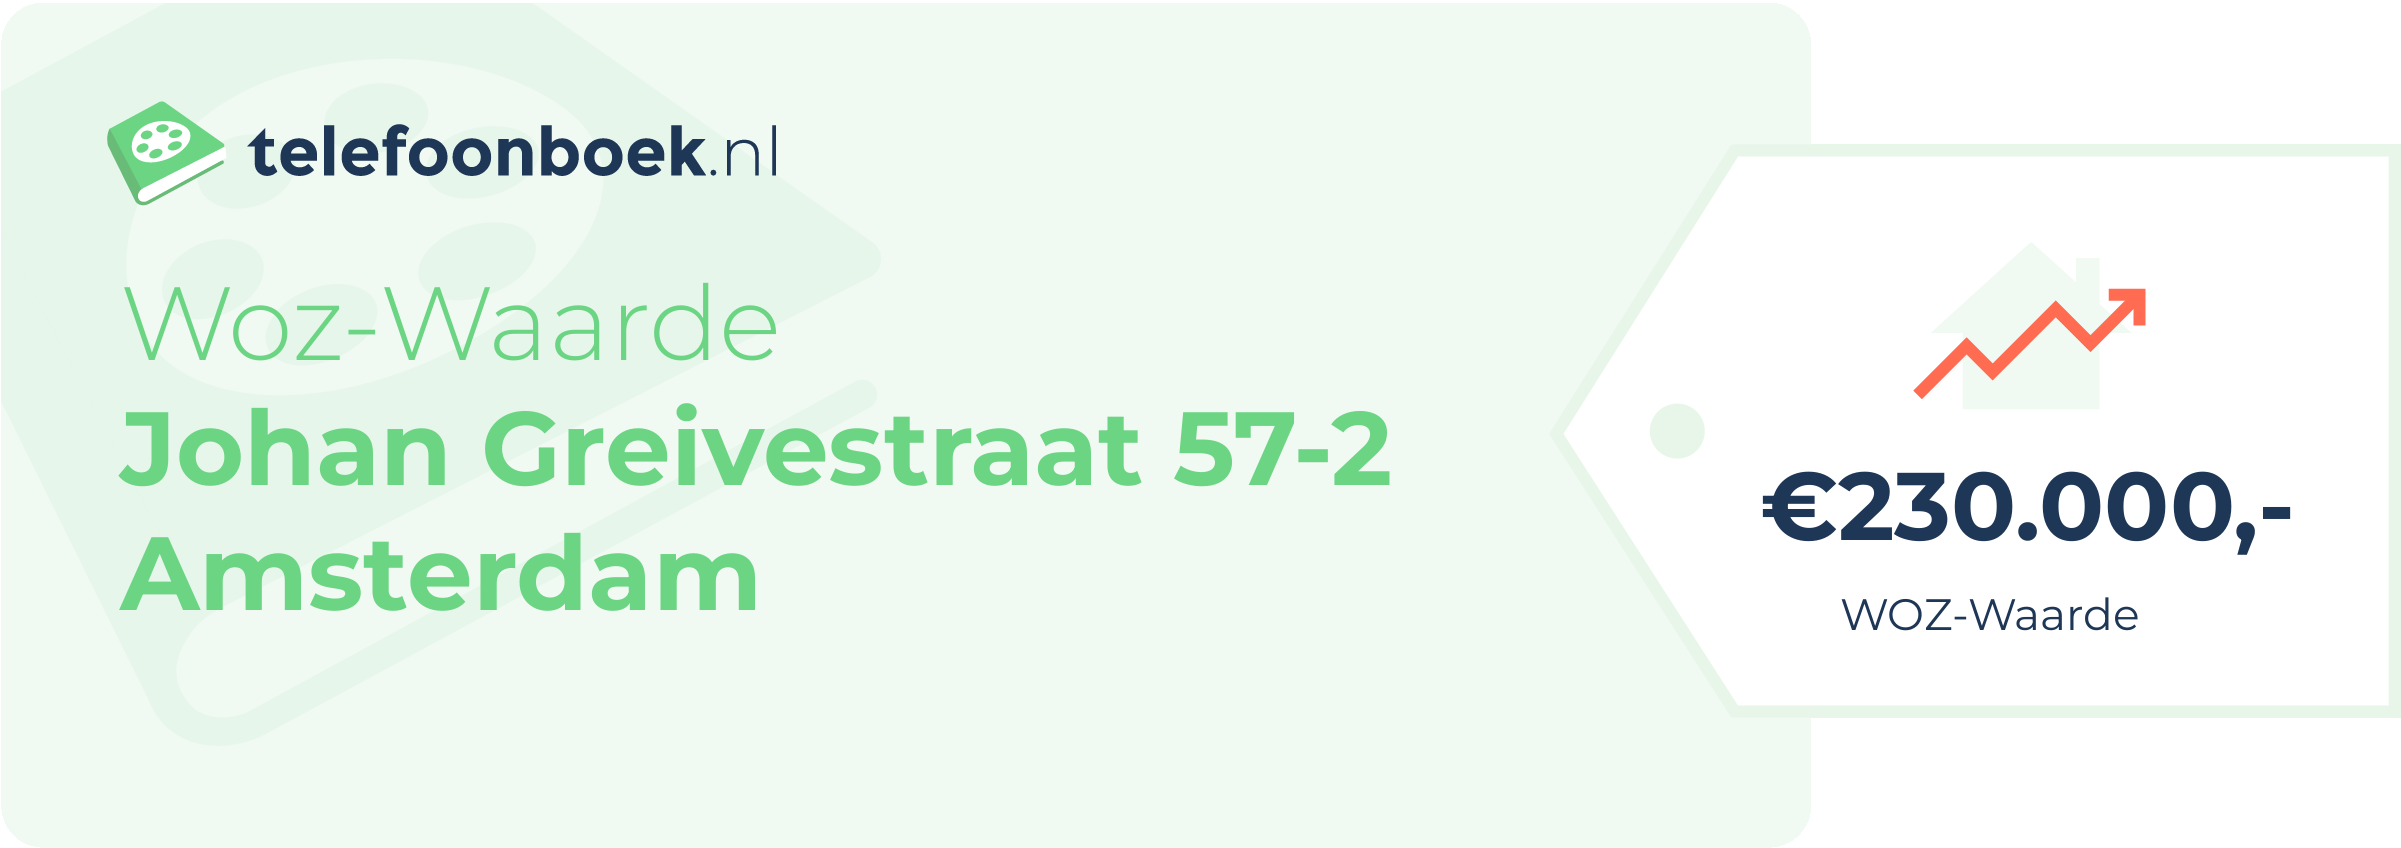 WOZ-waarde Johan Greivestraat 57-2 Amsterdam